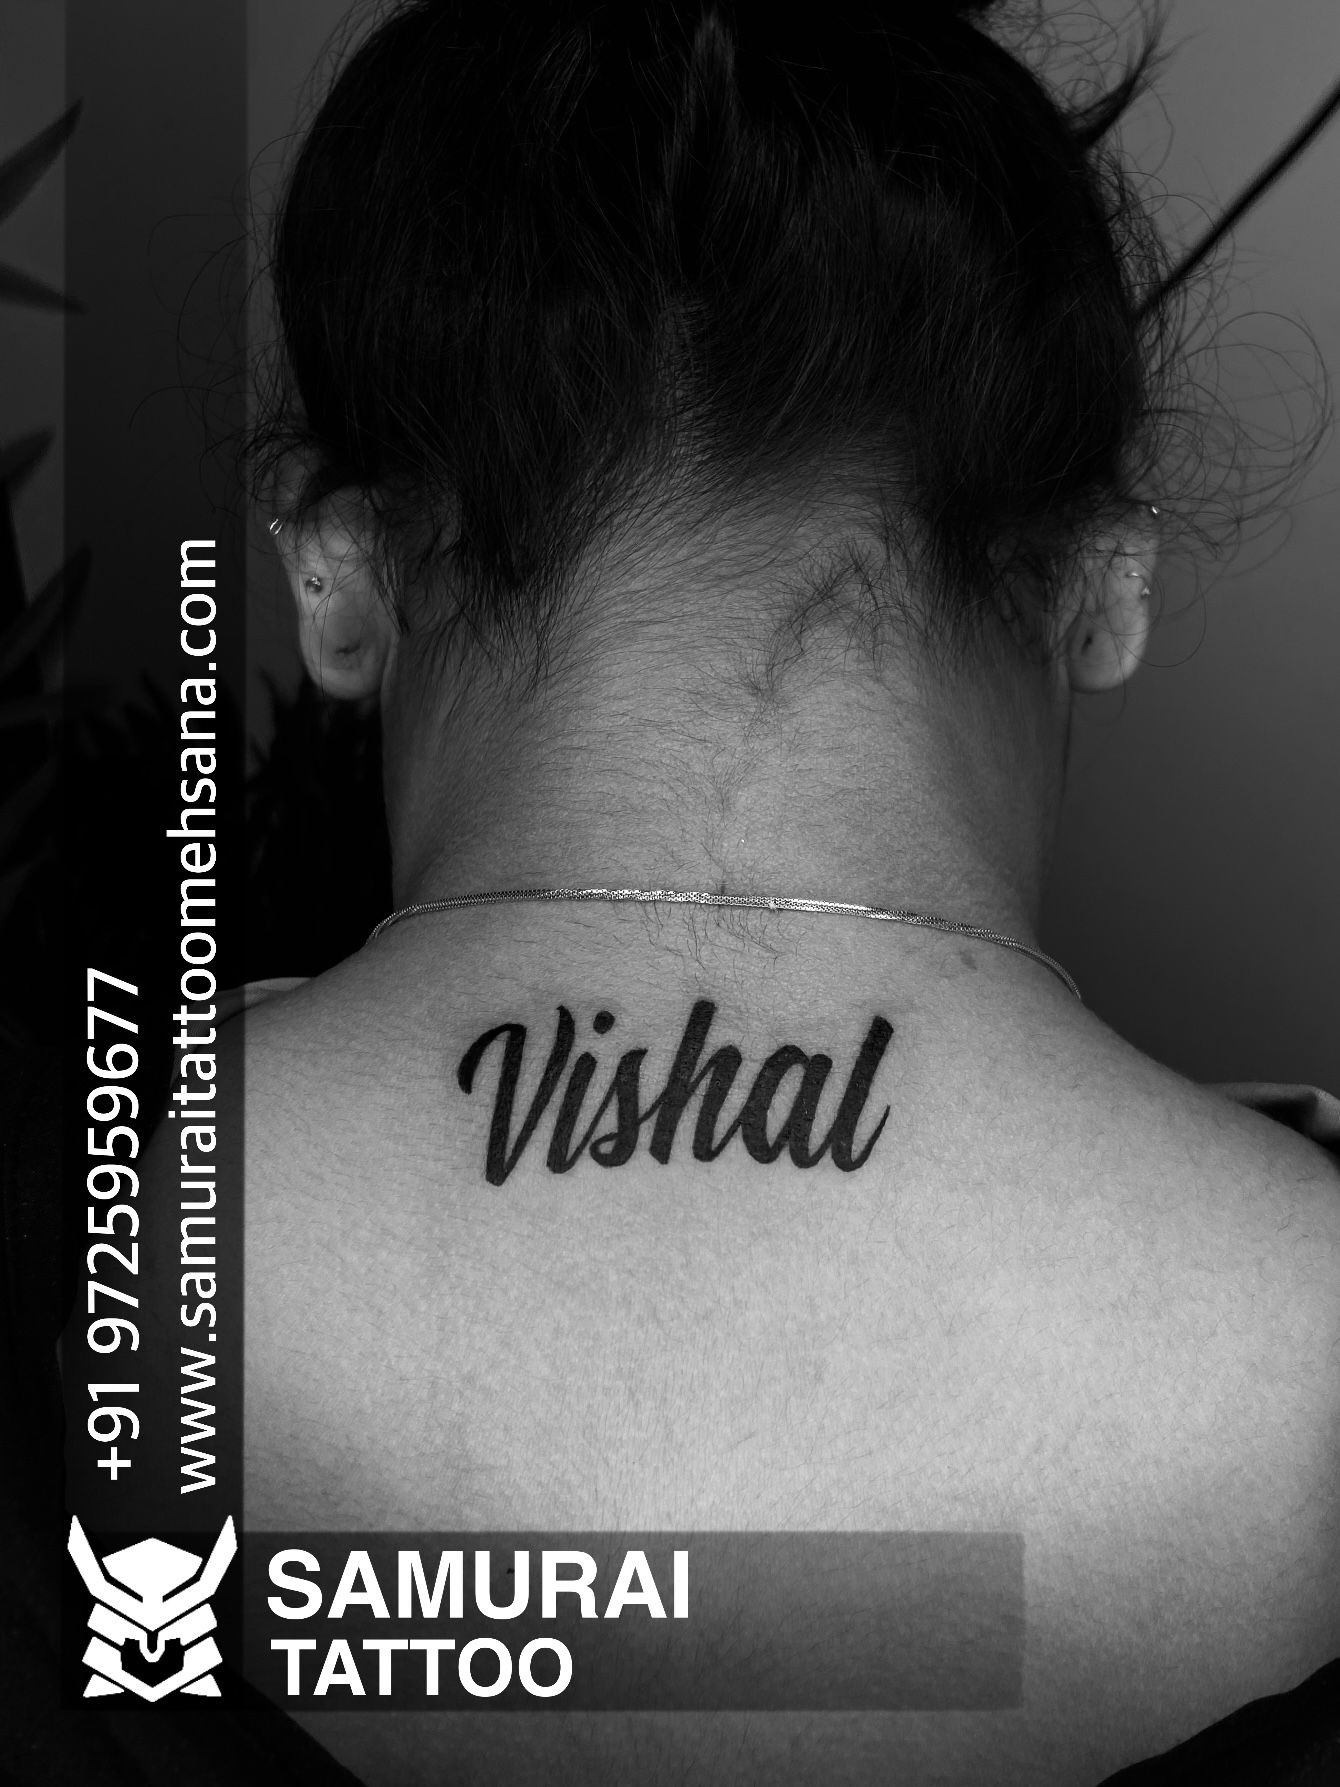 Vishal name Tattoo - YouTube